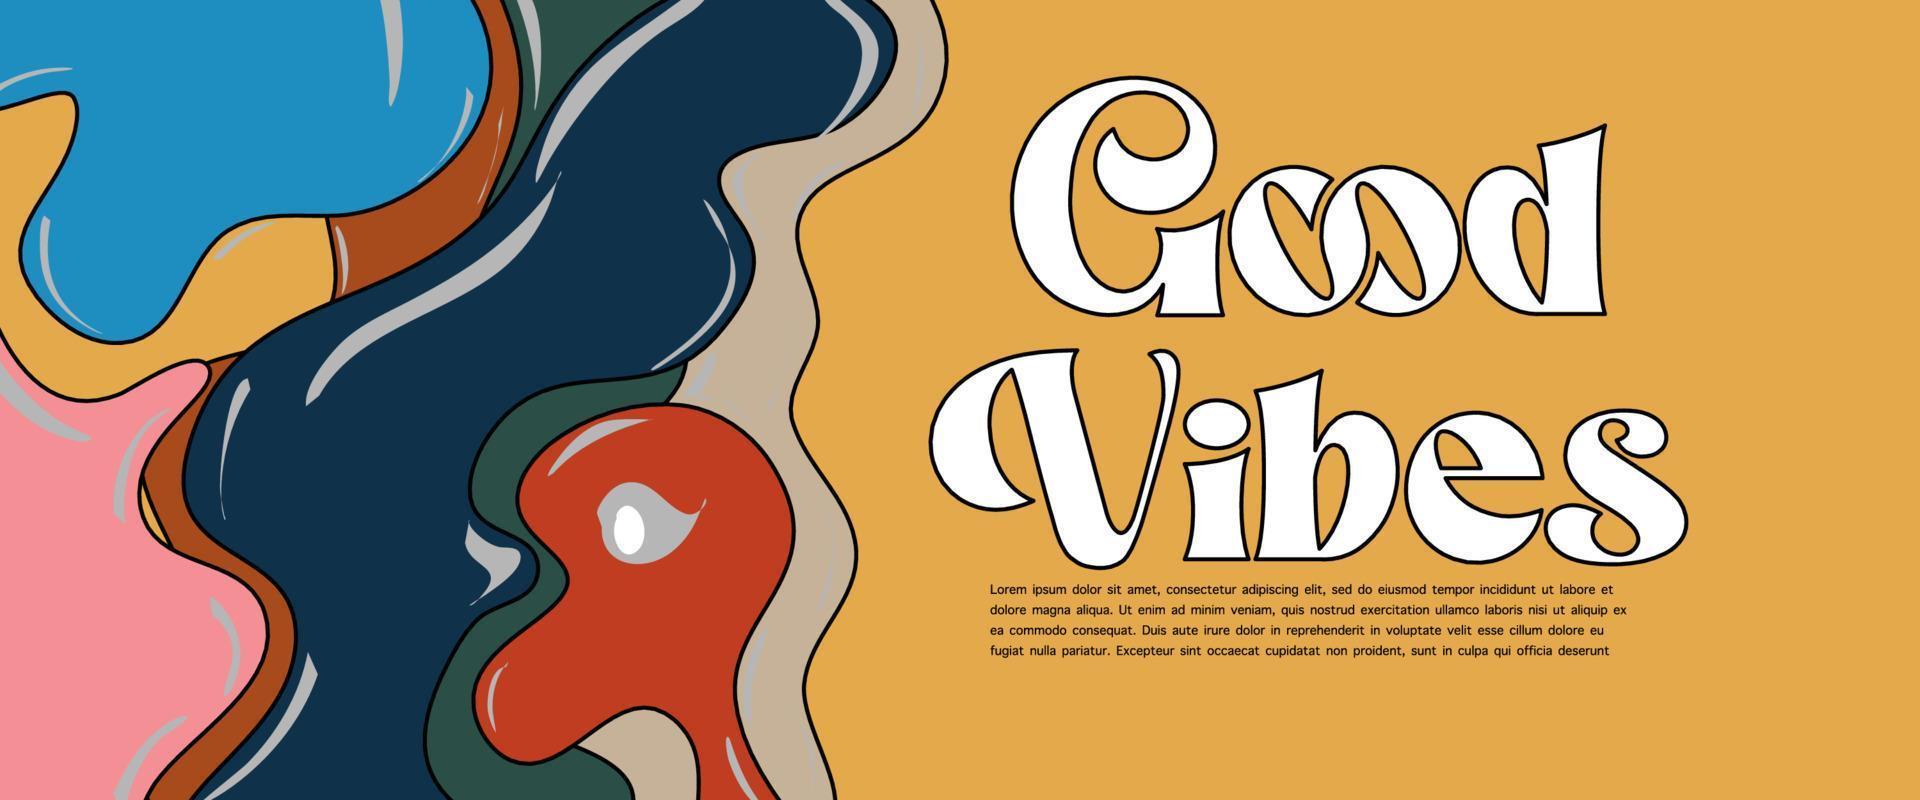 70s groovy retro good vibes solo eslogan con hippie remolino pastel dibujado a mano psicodélico fondo groovy. estilo psicodélico vaporwave de los años 80 - 90. vector